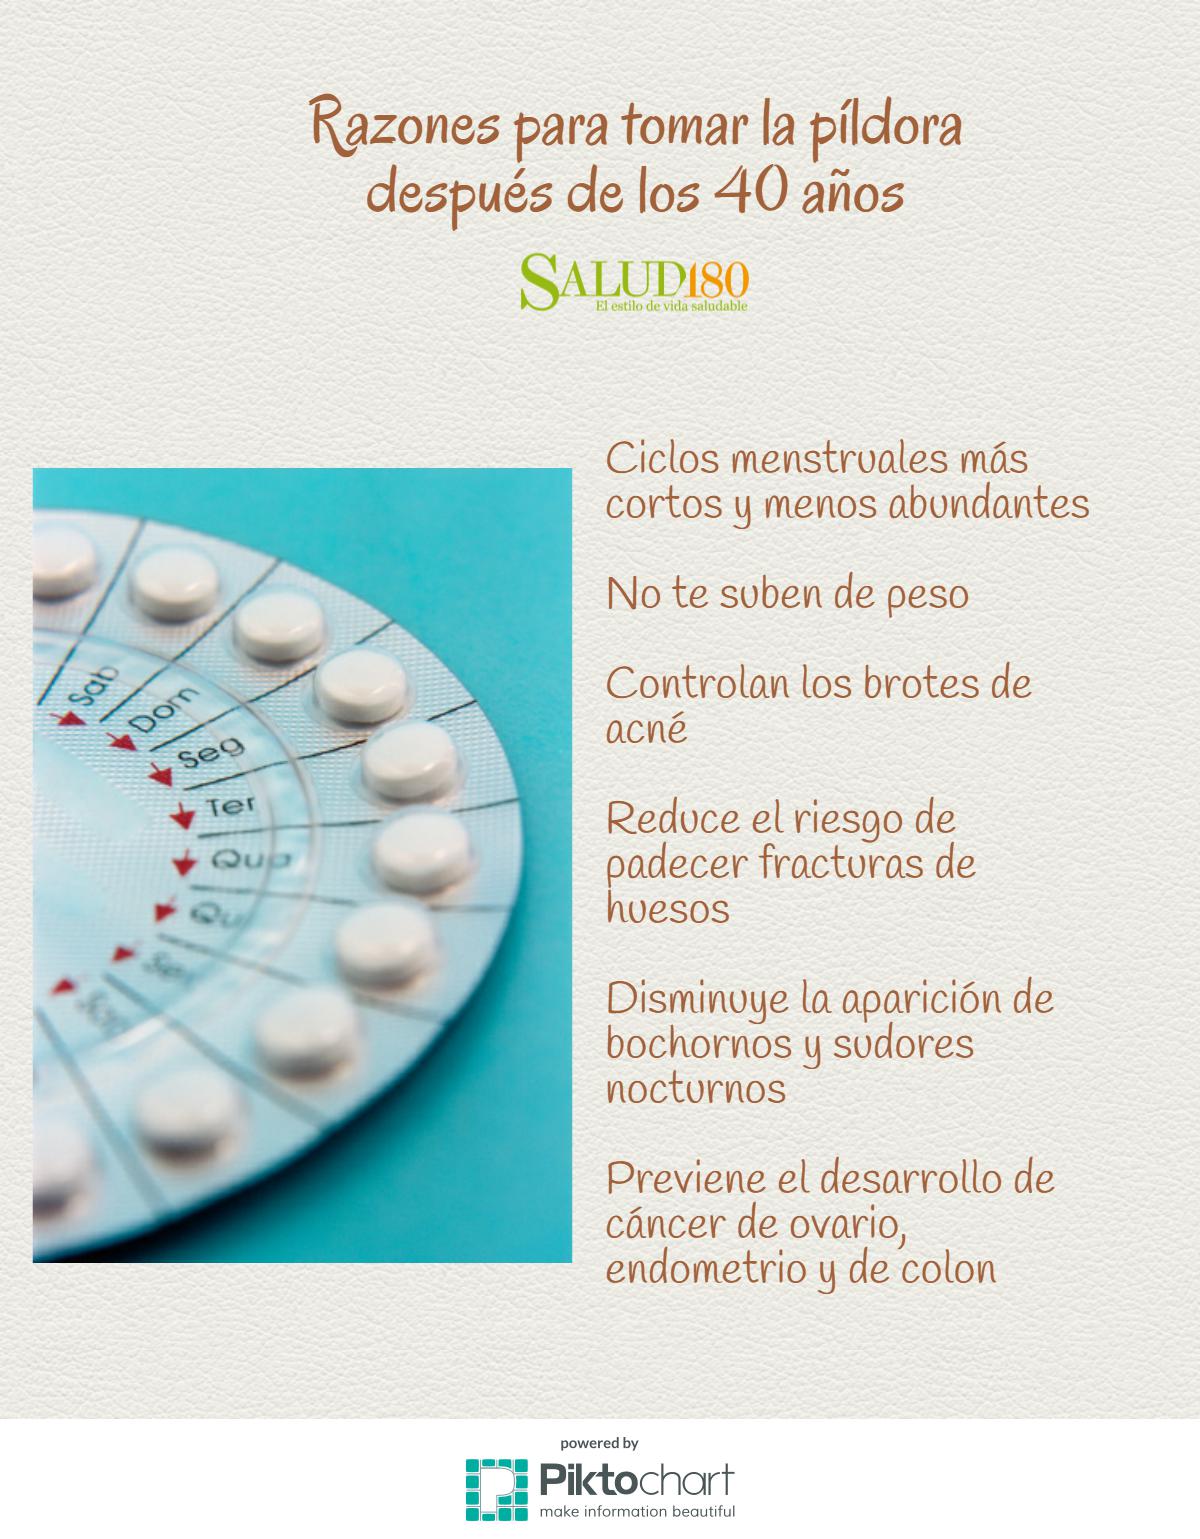 Razones para pastillas anticonceptivas después los 40